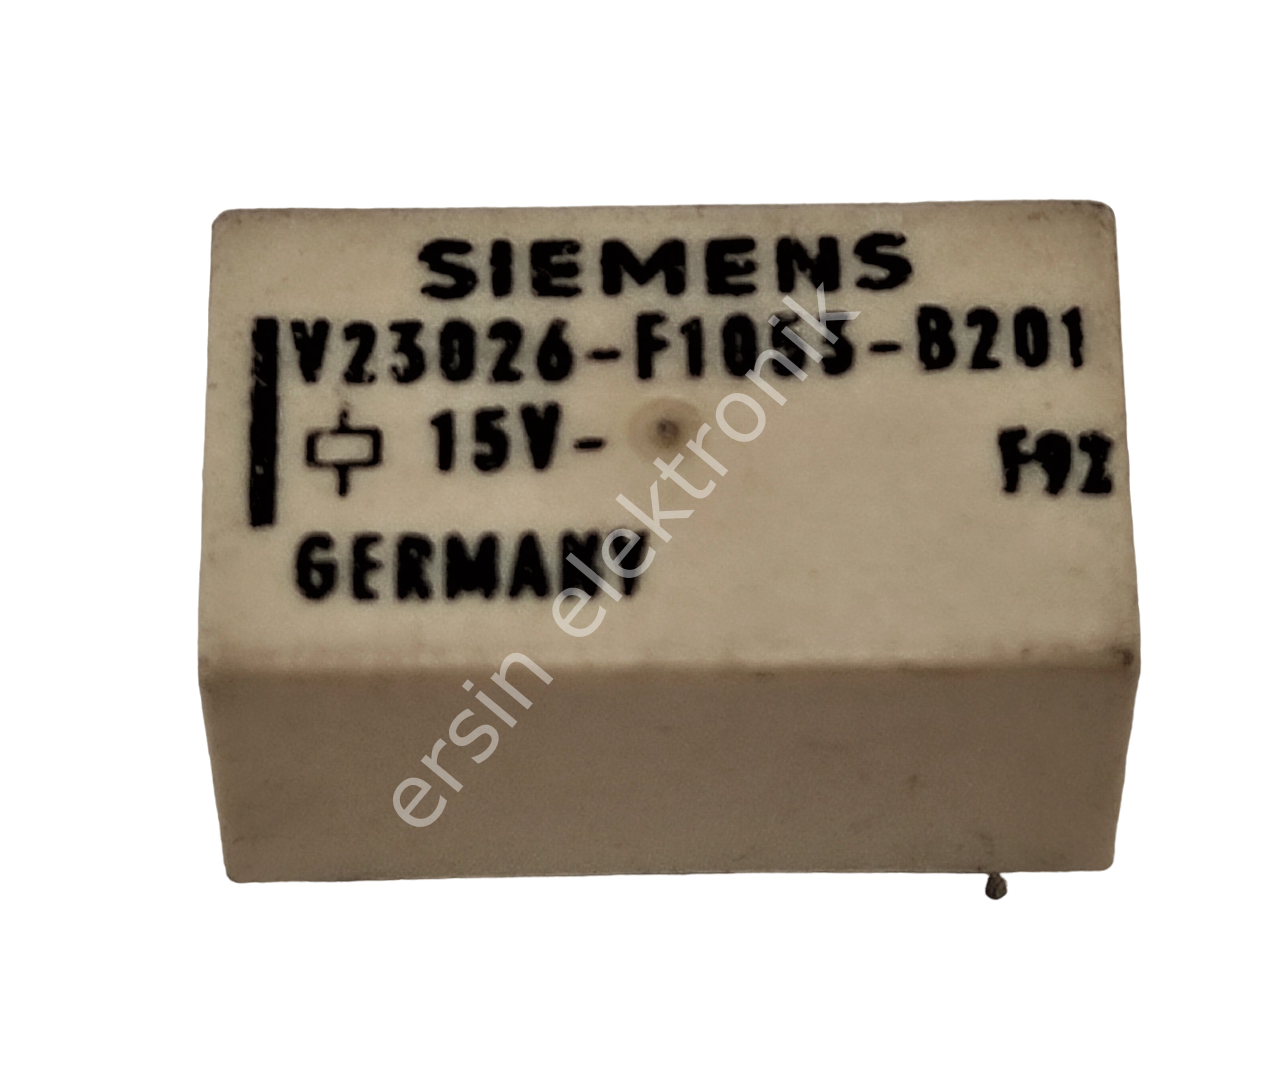 V23026-F1053-B201 (15V) / Siemens Röle (HB)